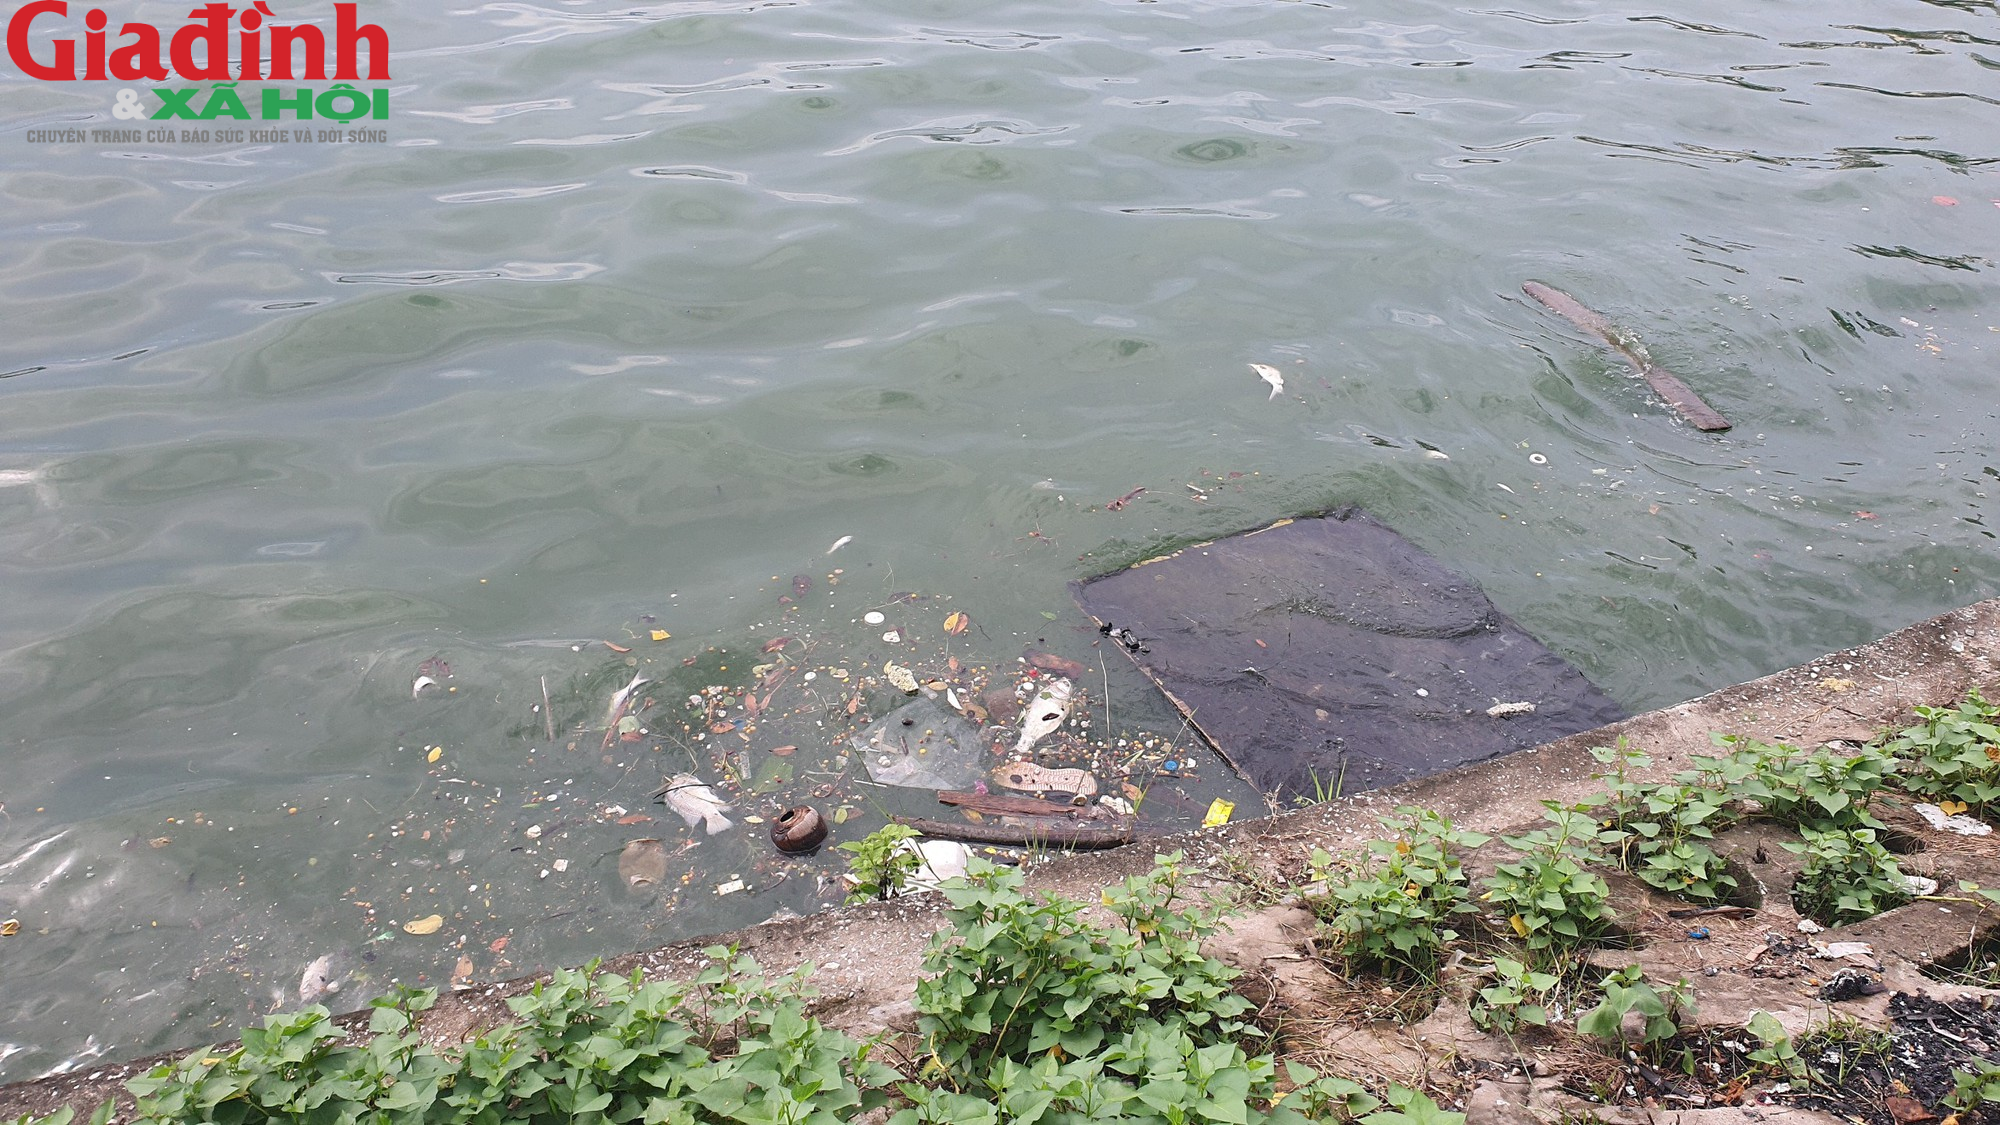 Nhiều hồ ở Hà Nội xuất hiện rác thải, xác cá chết trôi nổi gây ô nhiễm môi trường - Ảnh 9.